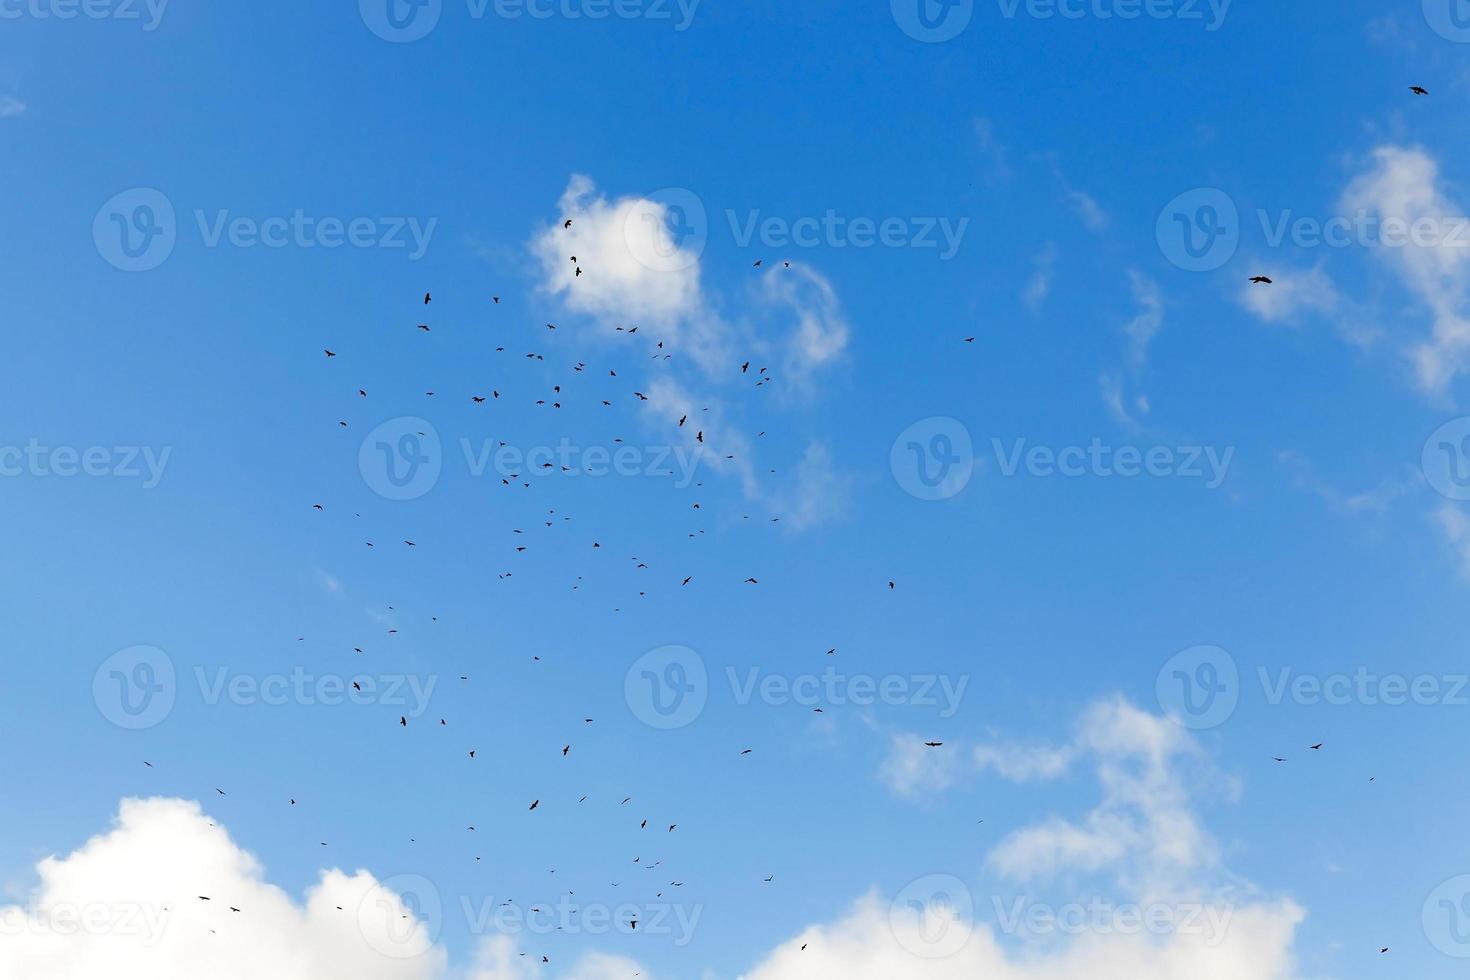 pássaros voando no céu foto